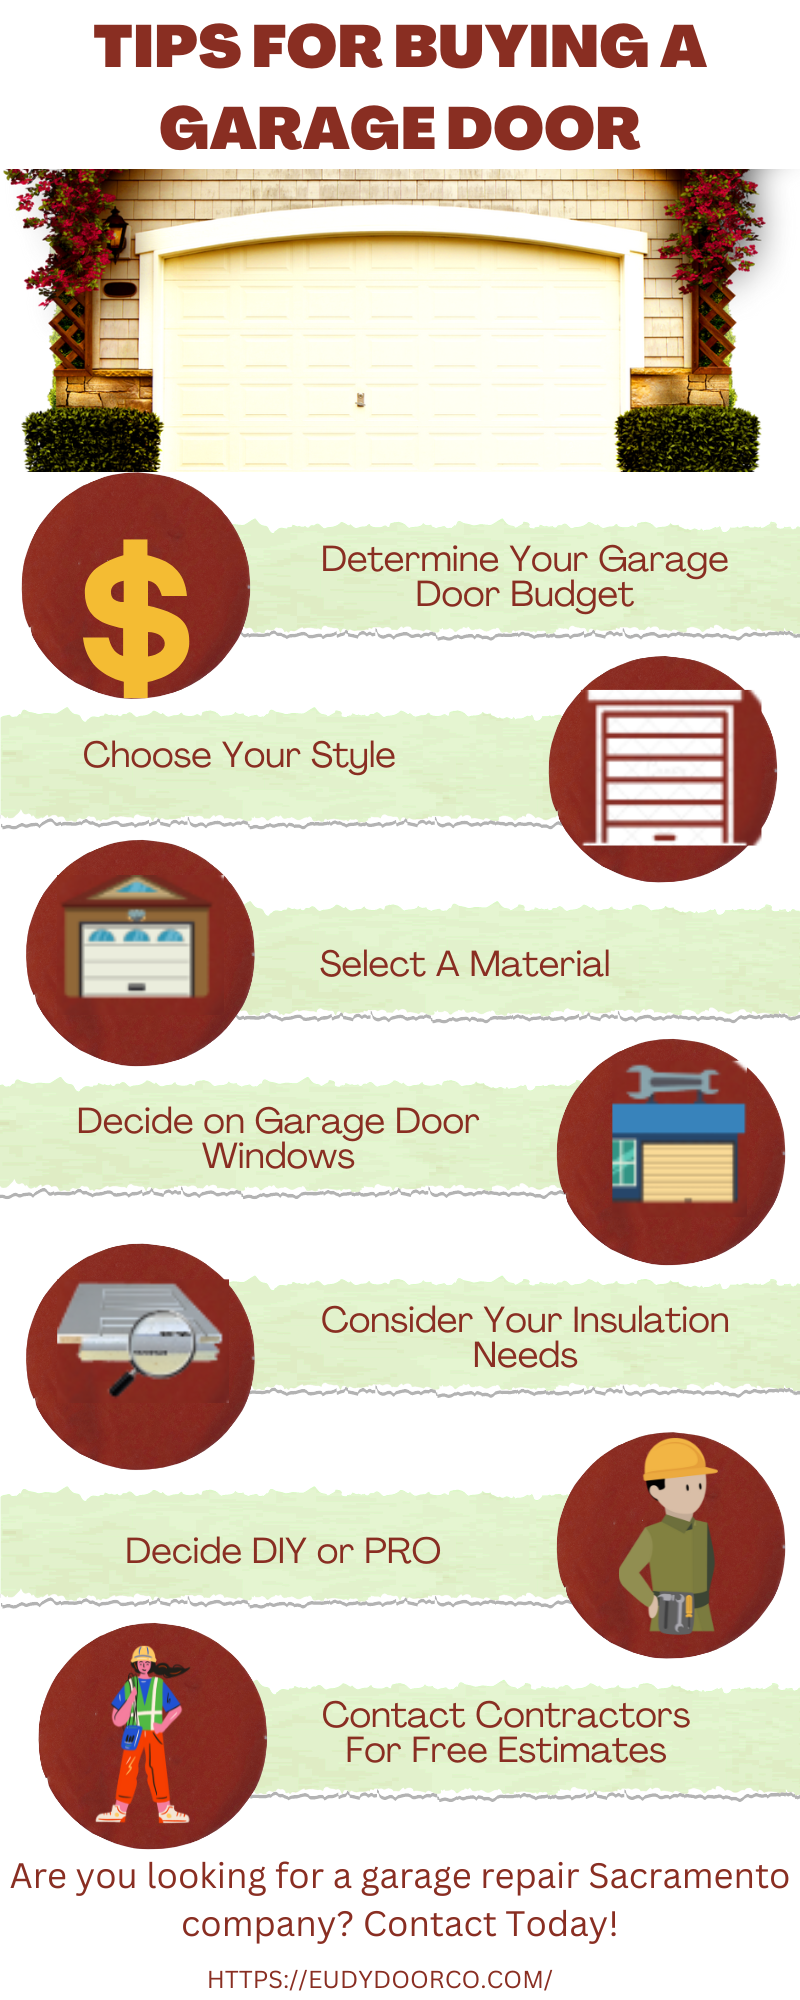 Tips for Buying a Garage Door